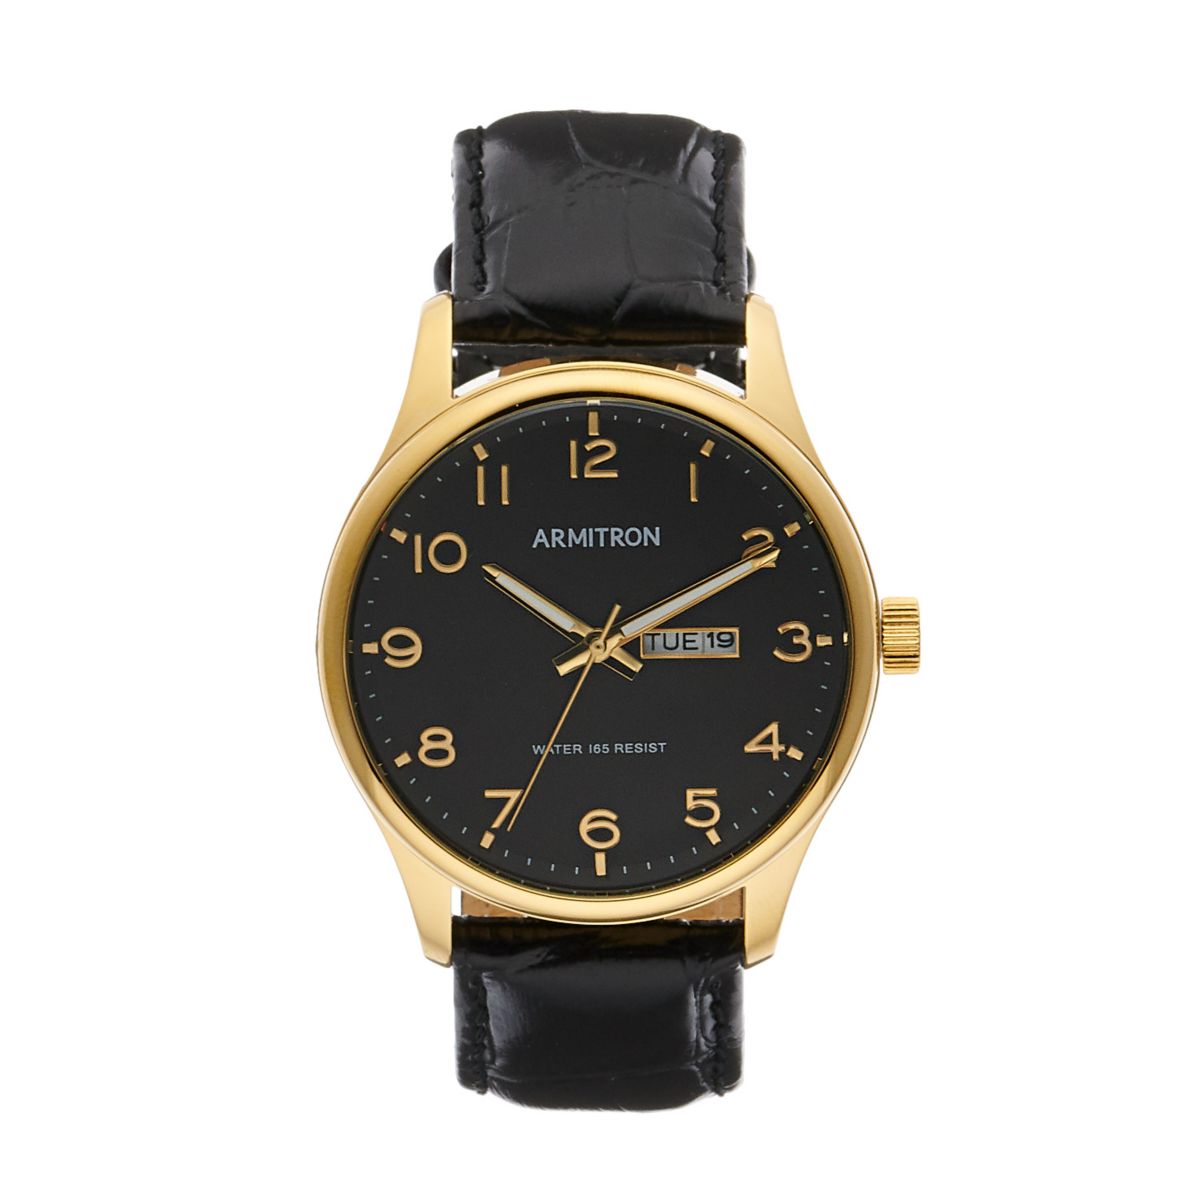 Мужские кожаные часы с календарем Armitron - 20-5355BKGPBK Armitron